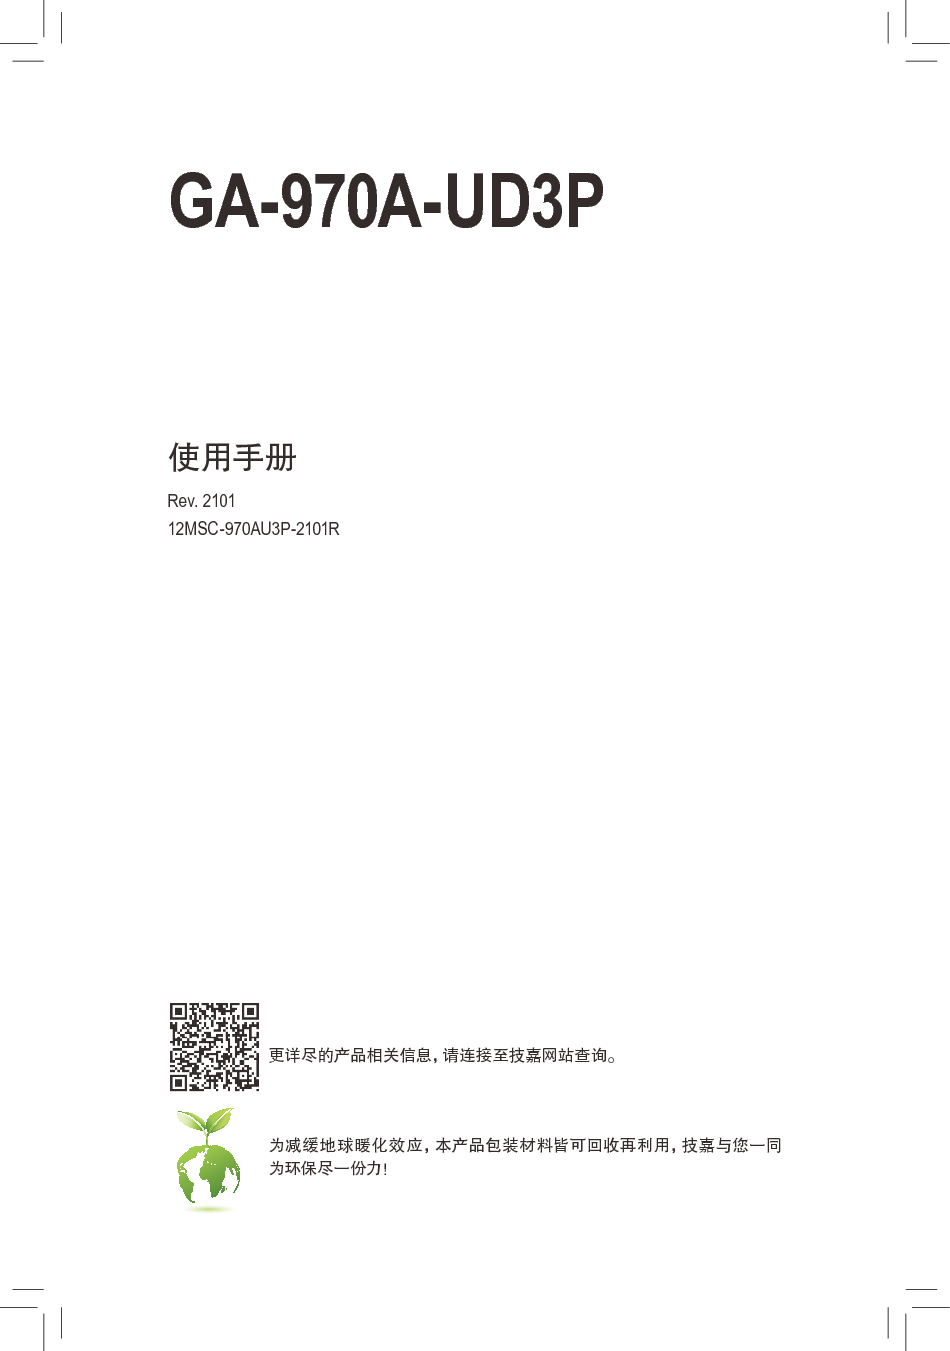 技嘉 Gigabyte GA-970A-UD3P 2101版 使用手册 封面